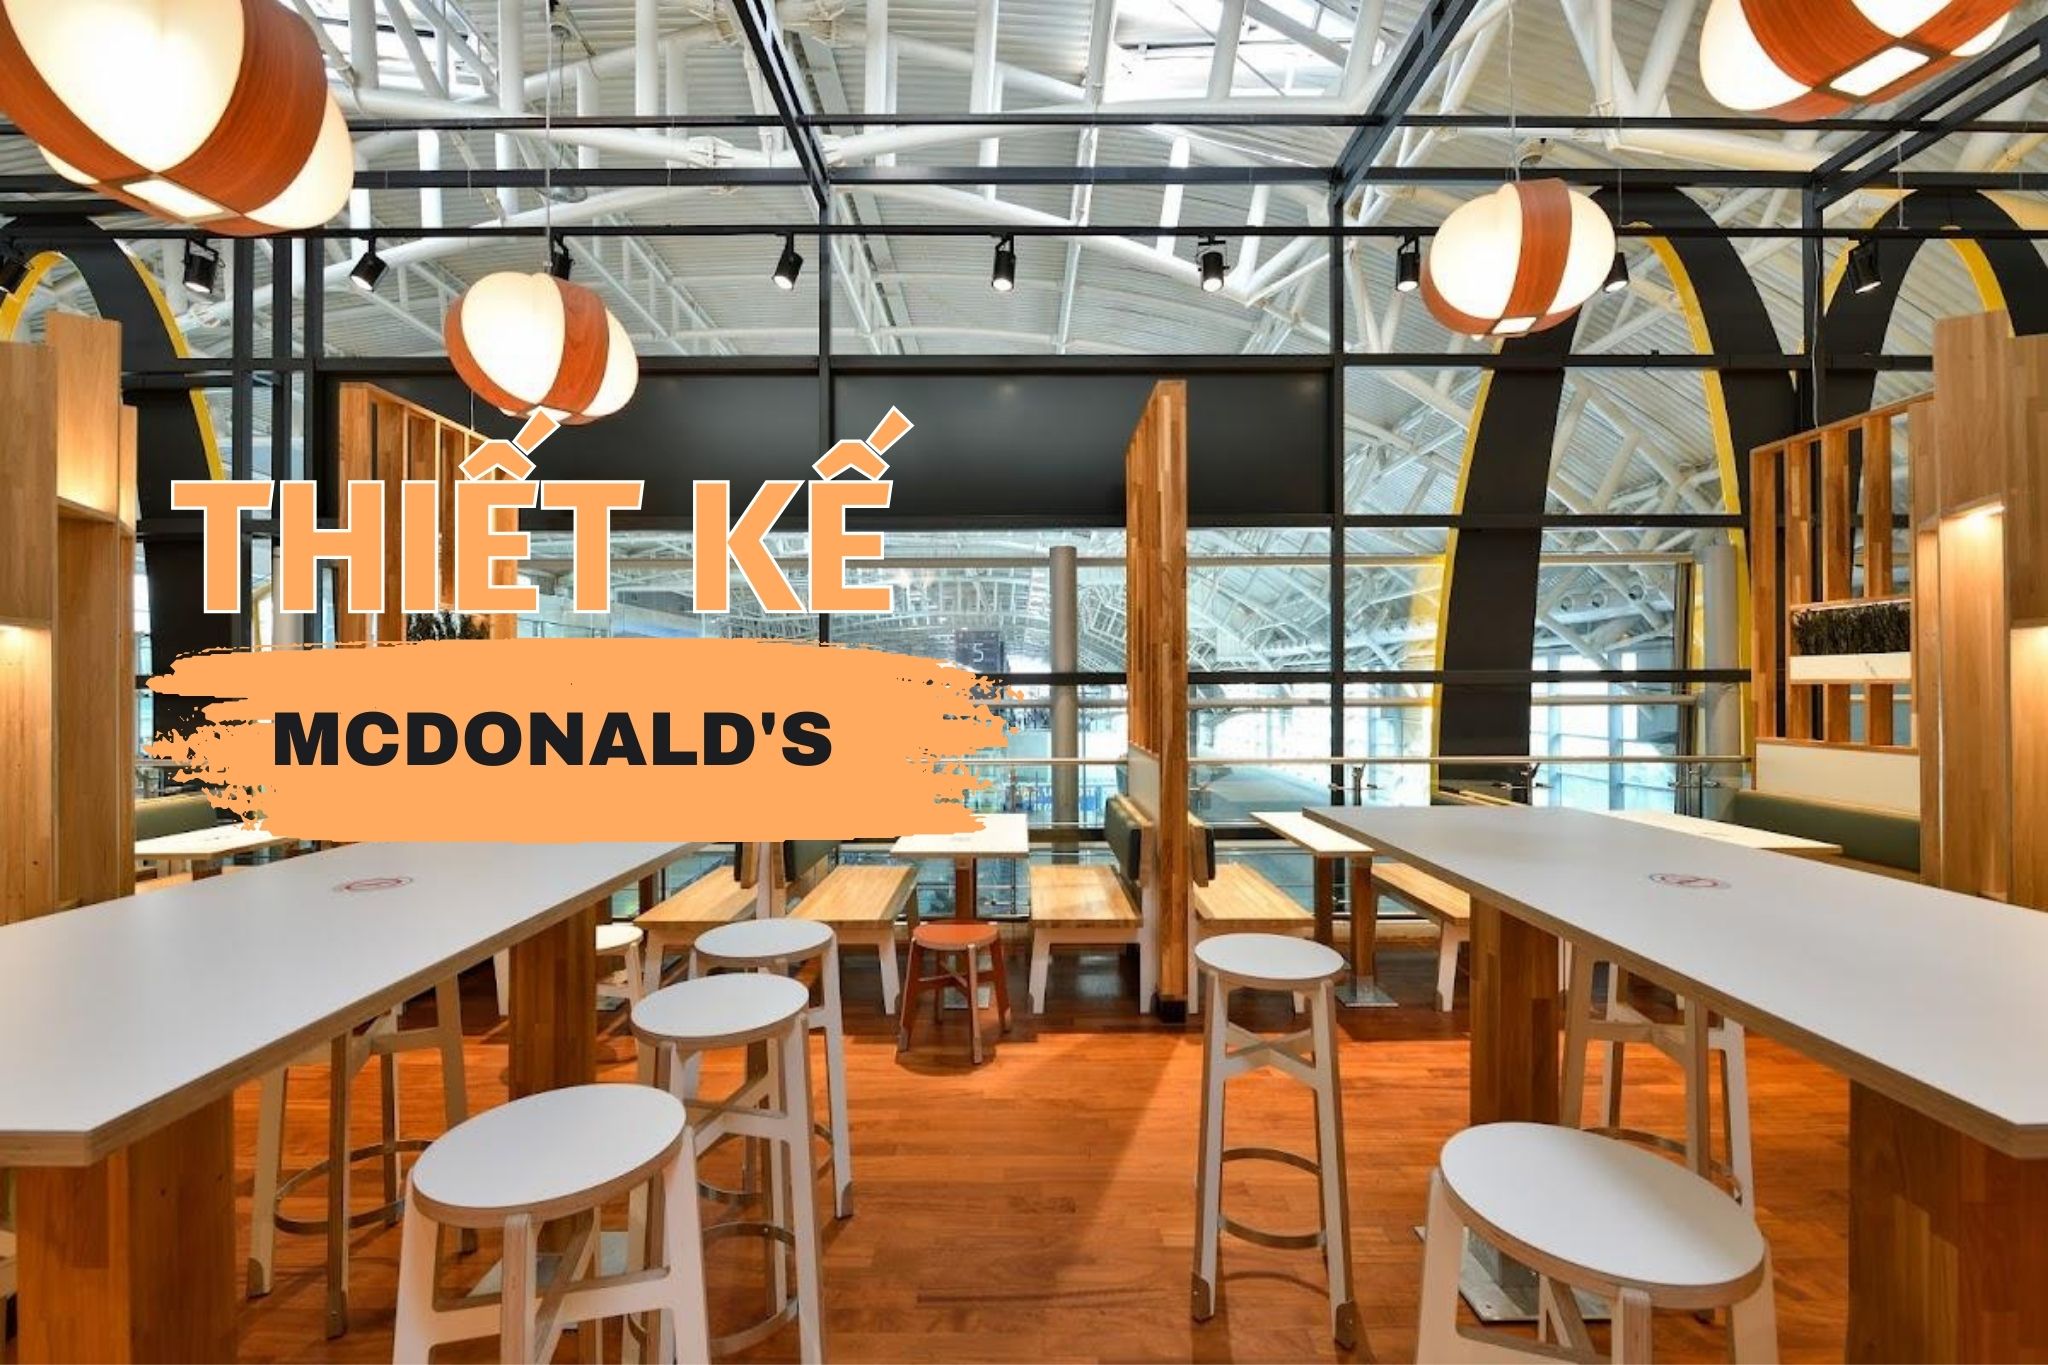 Thiết kế McDonald’s - Chuỗi nhà hàng thức ăn nhanh lớn nhất thế giới